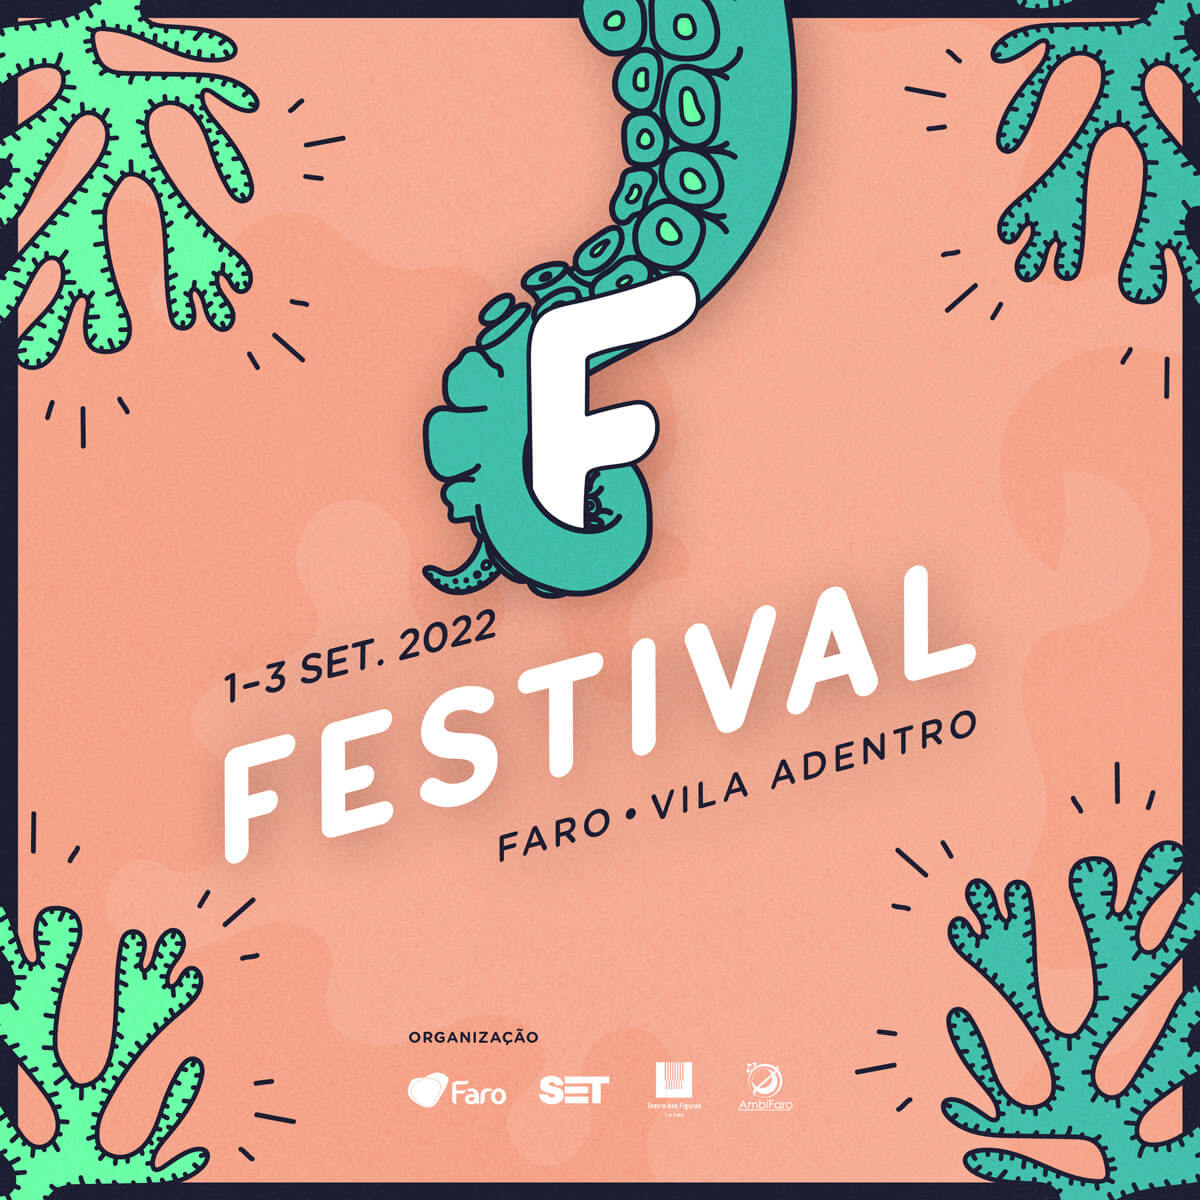 Festival F, que se realiza de 1 a 3 de setembro em Faro, coloca 1000 bilhetes em pré-venda